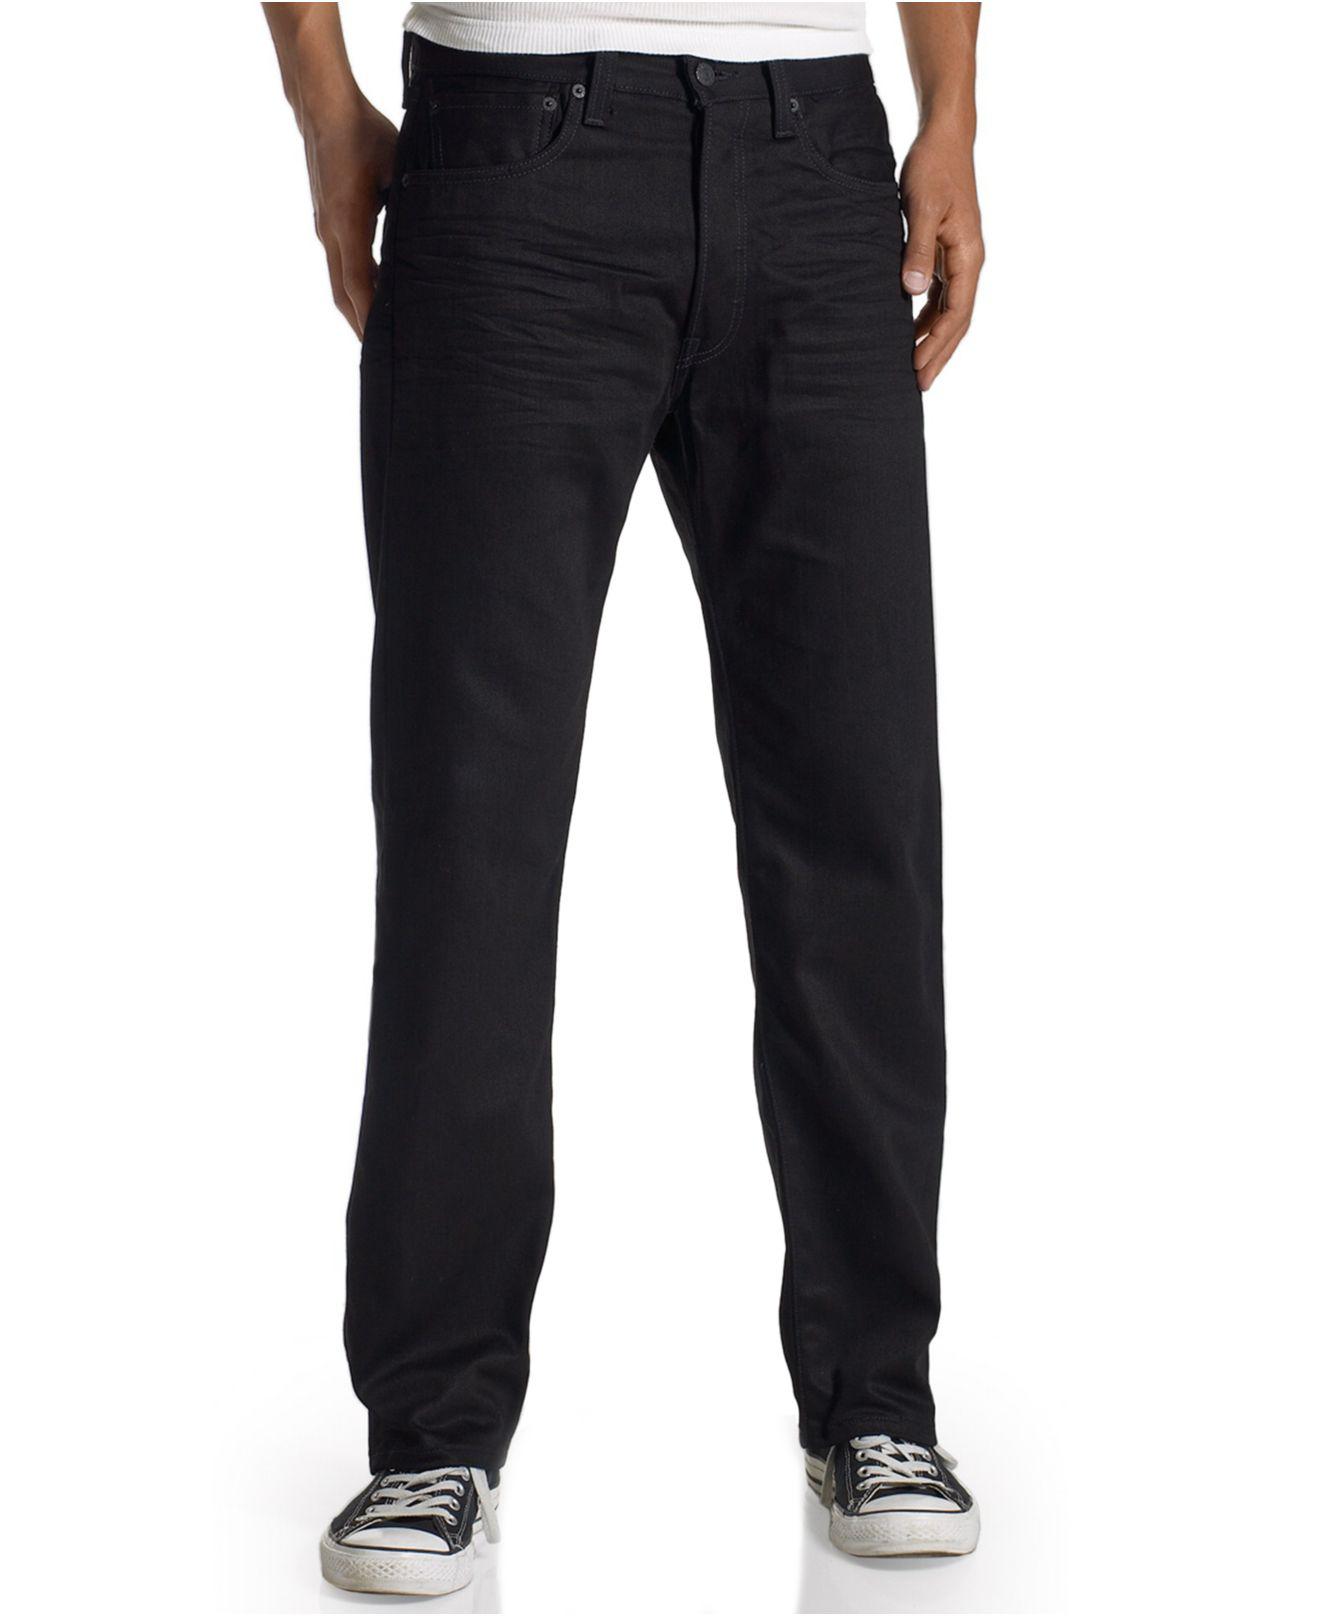 Levi's Denim 501 Original-fit Jeans in Polished Black (Black) for Men ...